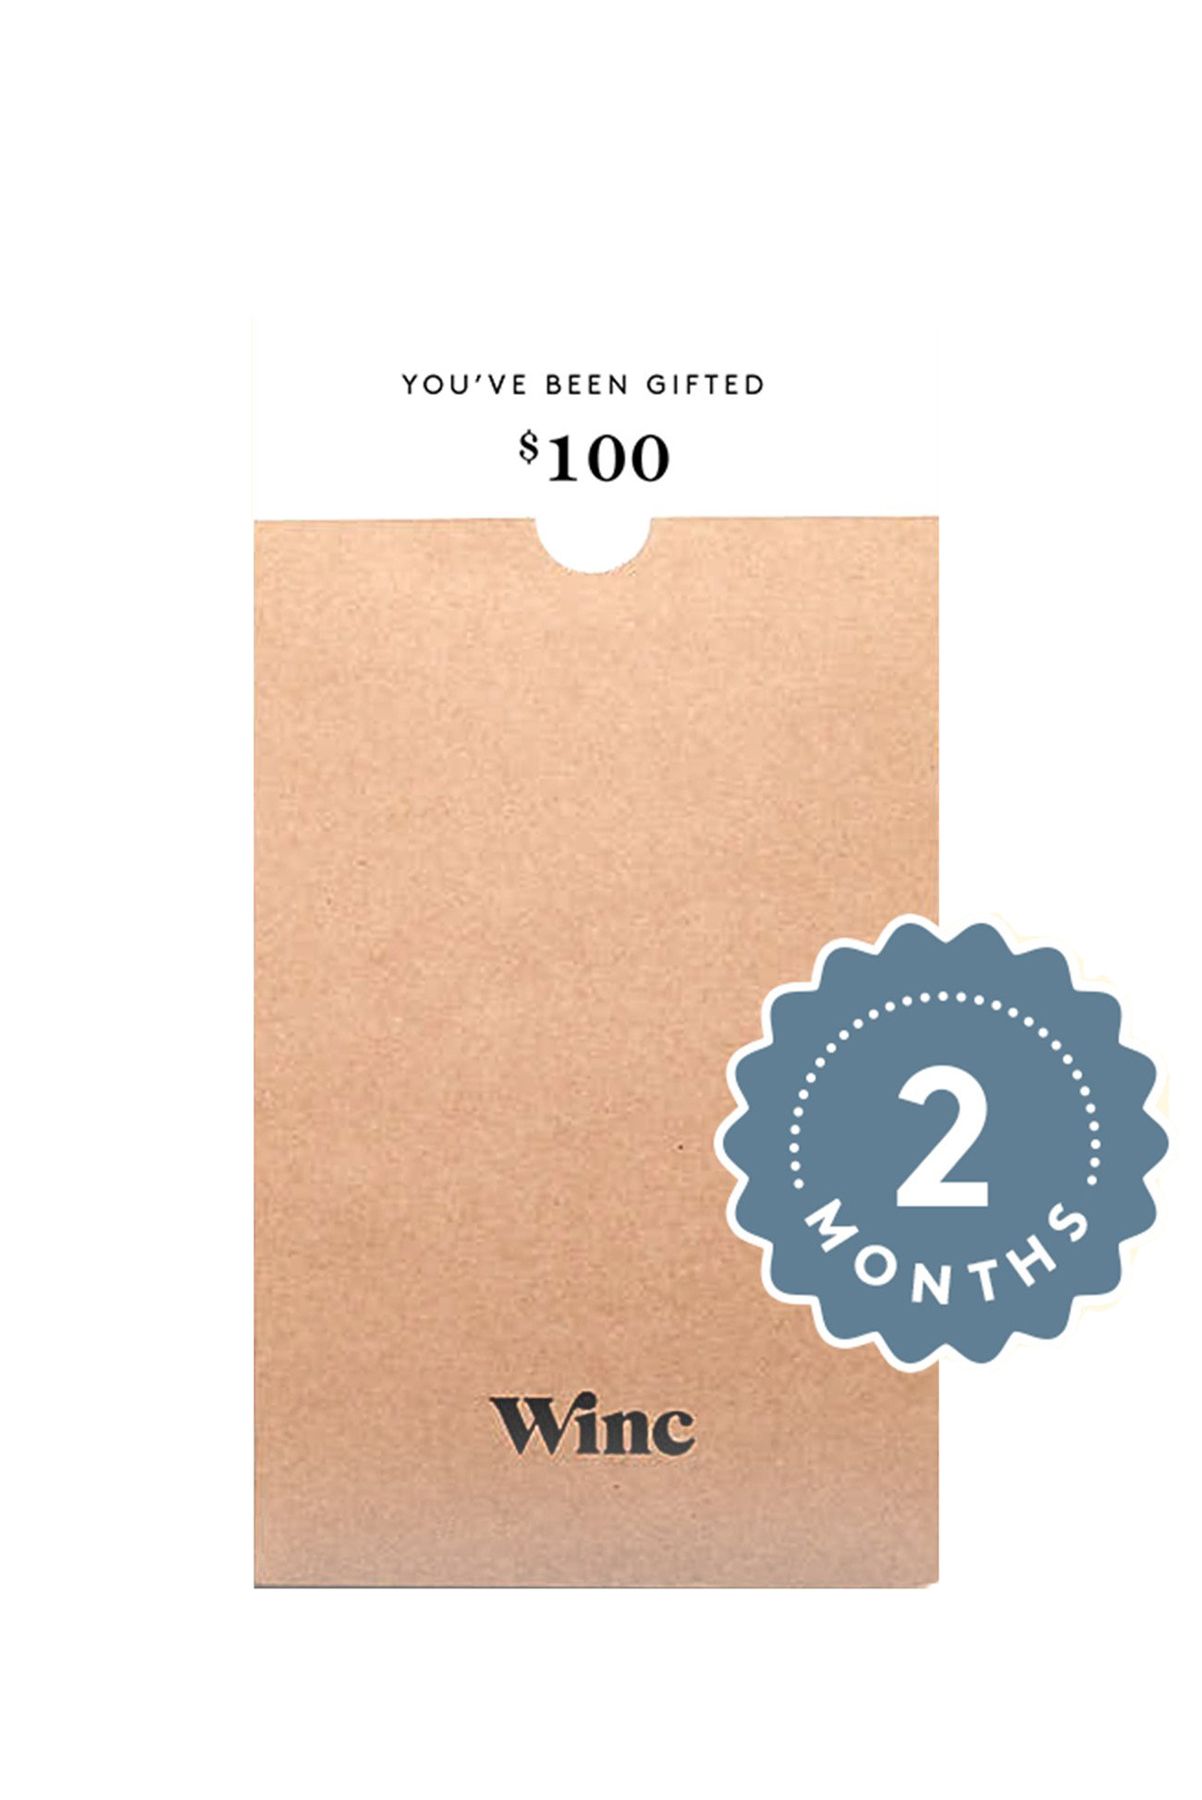 أفضل الهدايا للأمهات الجدد - بطاقة هدايا نادي النبيذ Winc